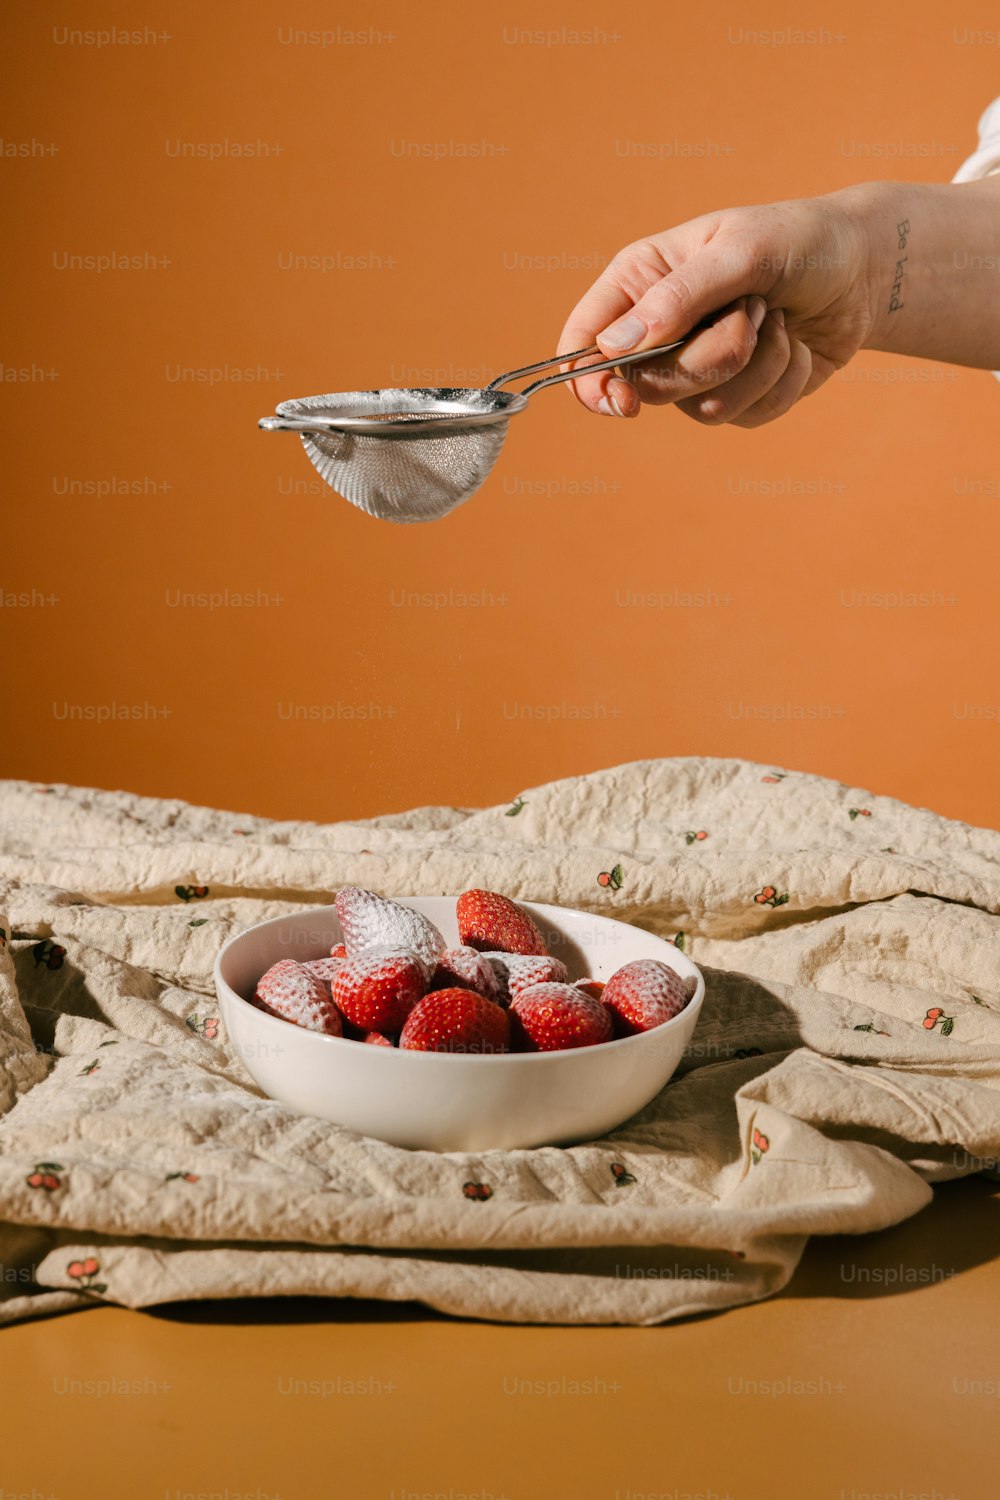 un tazón de fresas en una mesa con una persona sosteniendo una cuchara